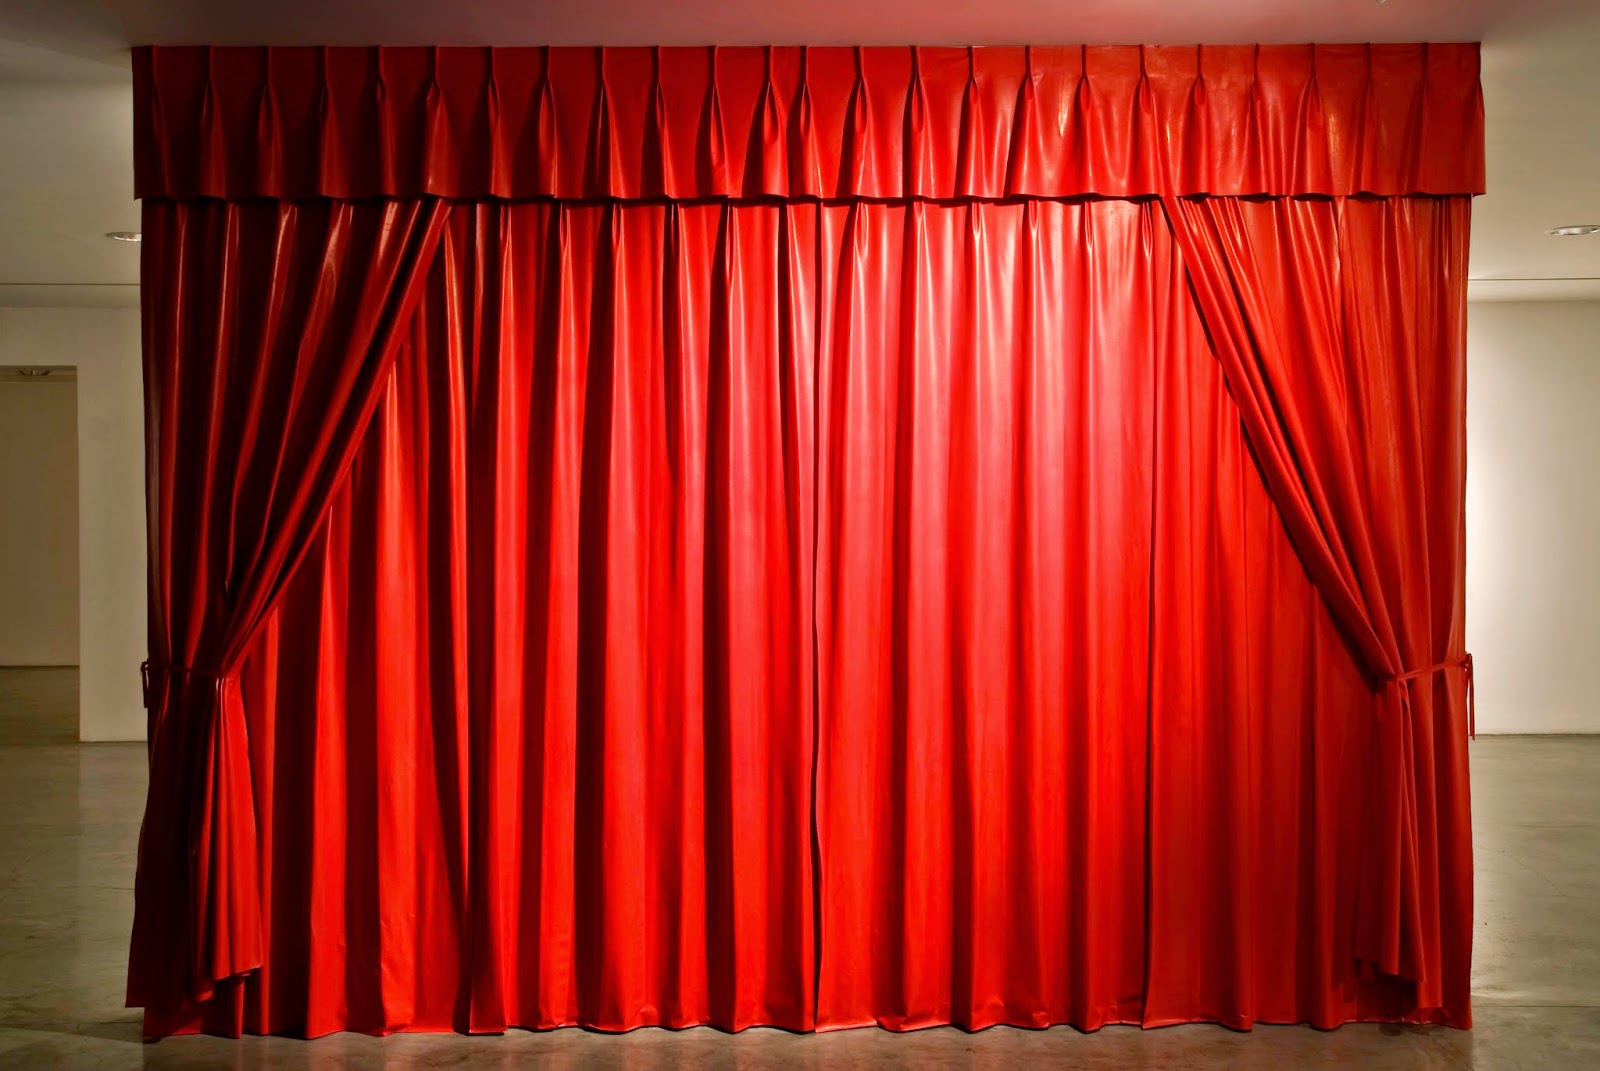 Rèm hội trường sân khấu nên chọn như thế nào?